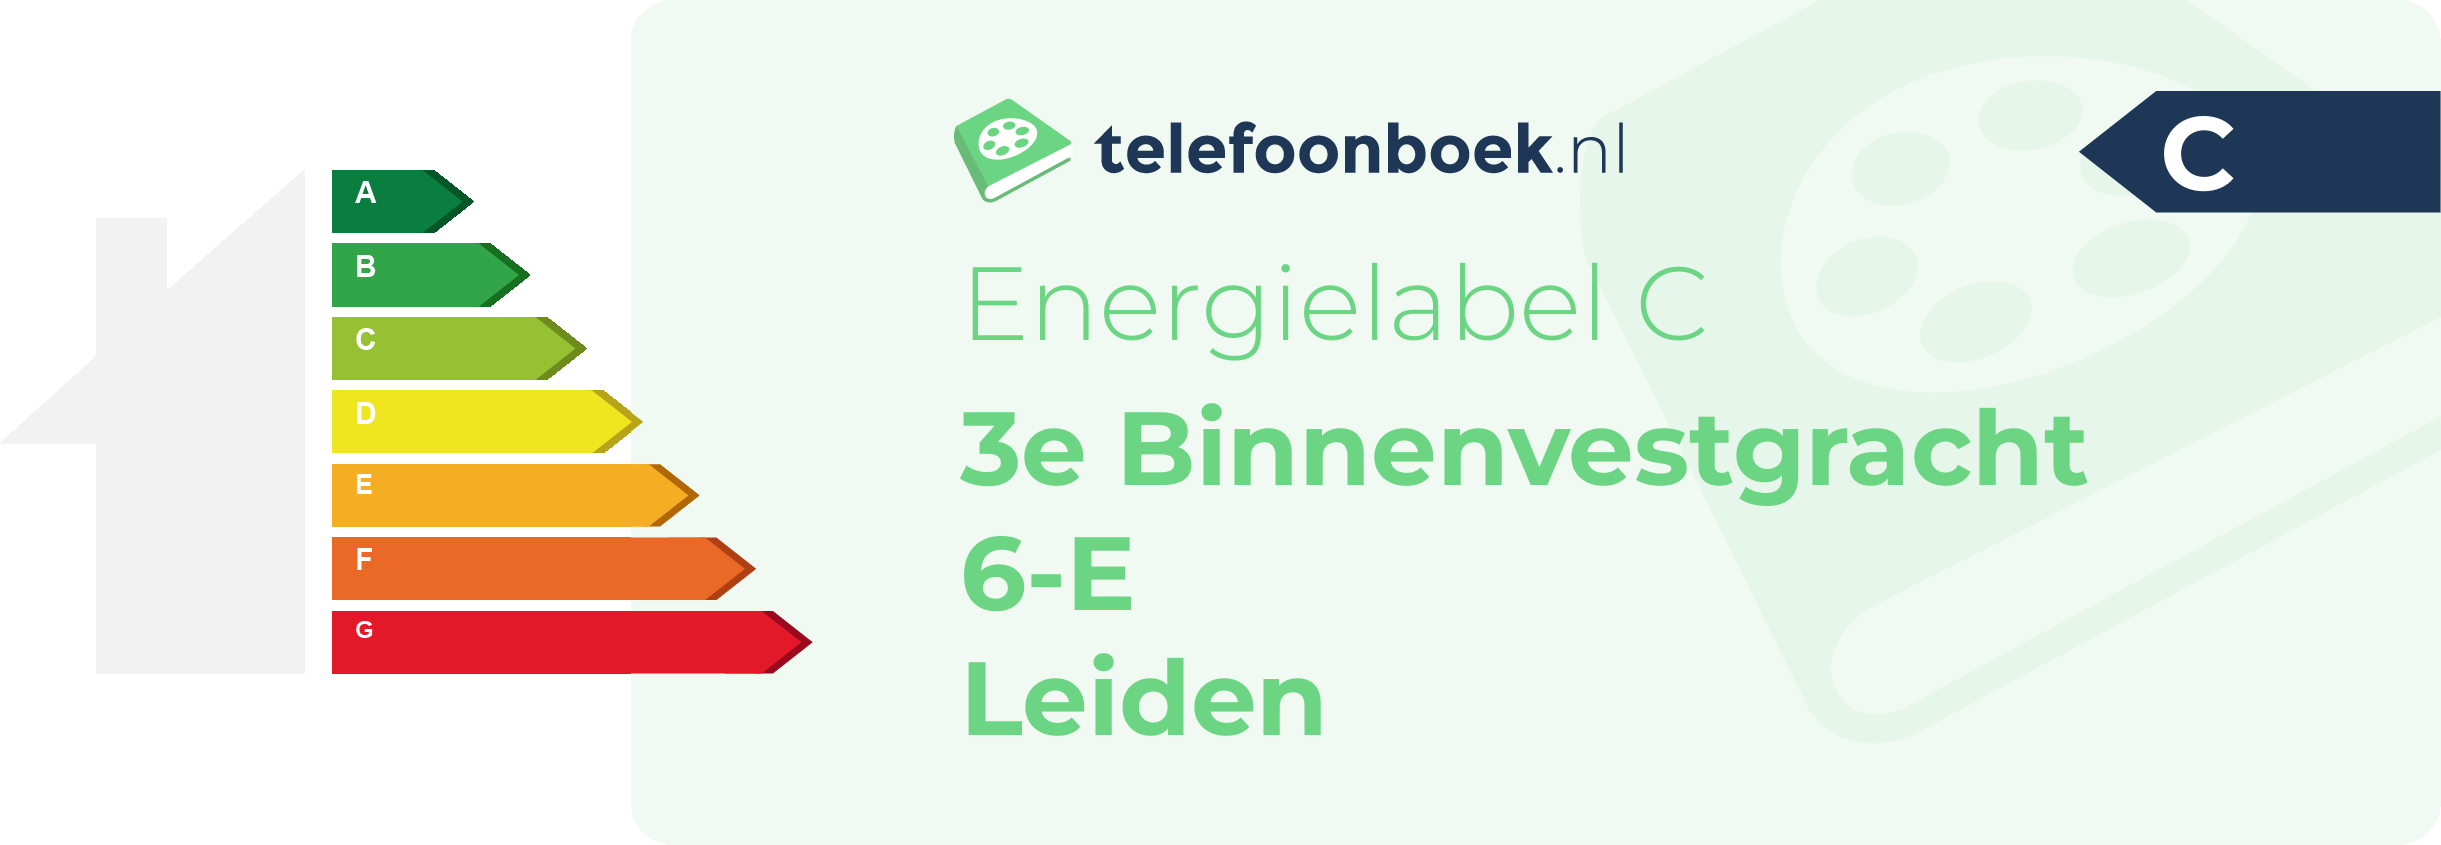 Energielabel 3e Binnenvestgracht 6-E Leiden